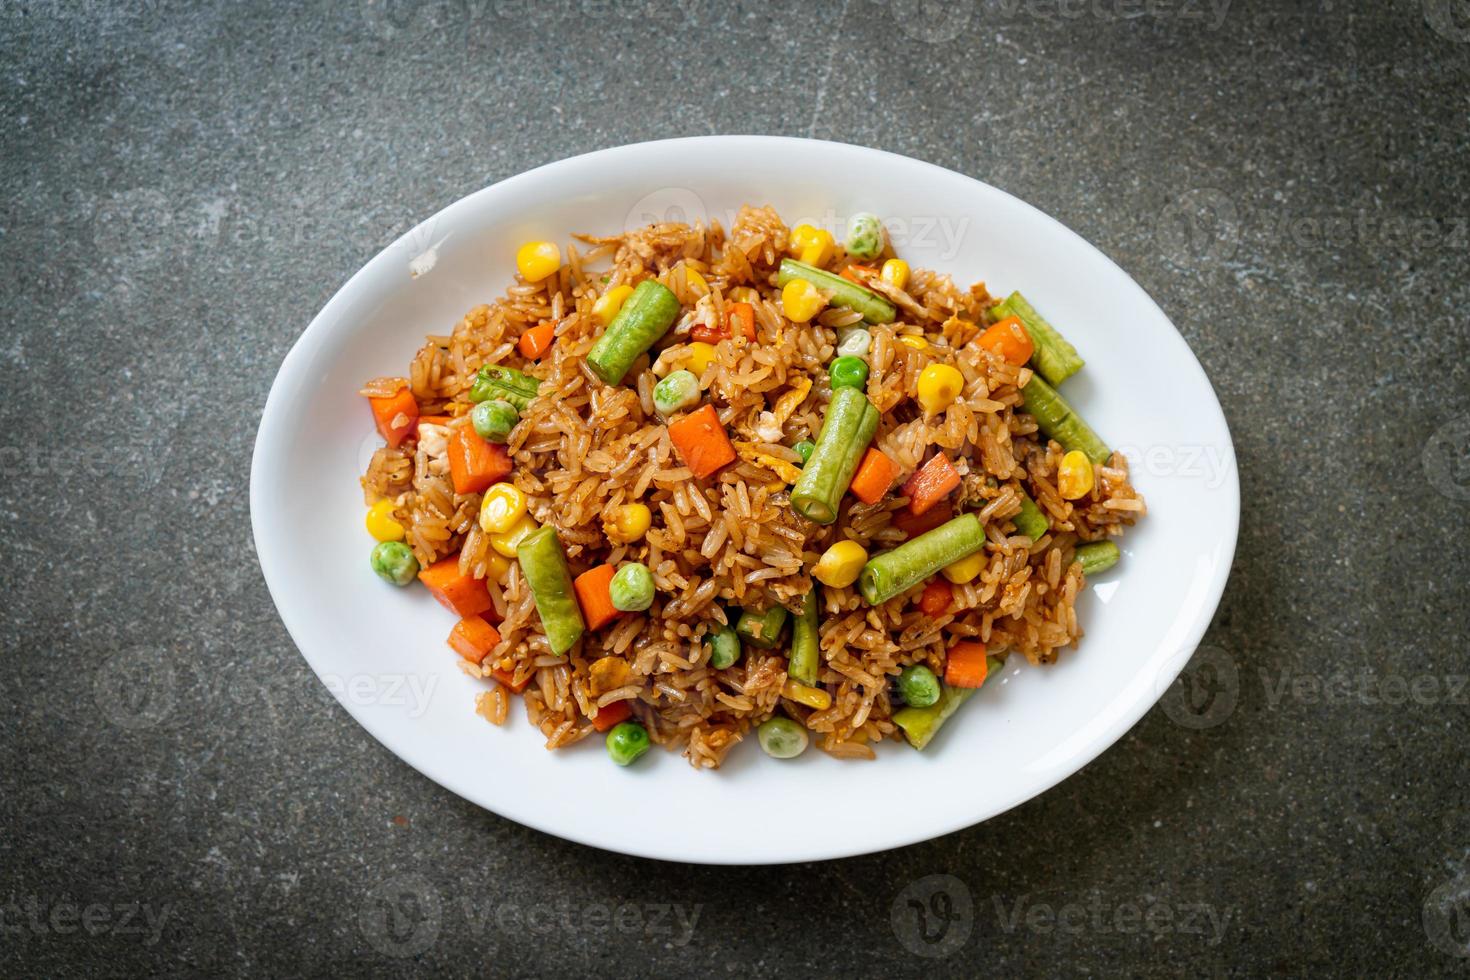 gebakken rijst met groene erwten, wortelen en maïs - vegetarische en gezonde voedingsstijl foto